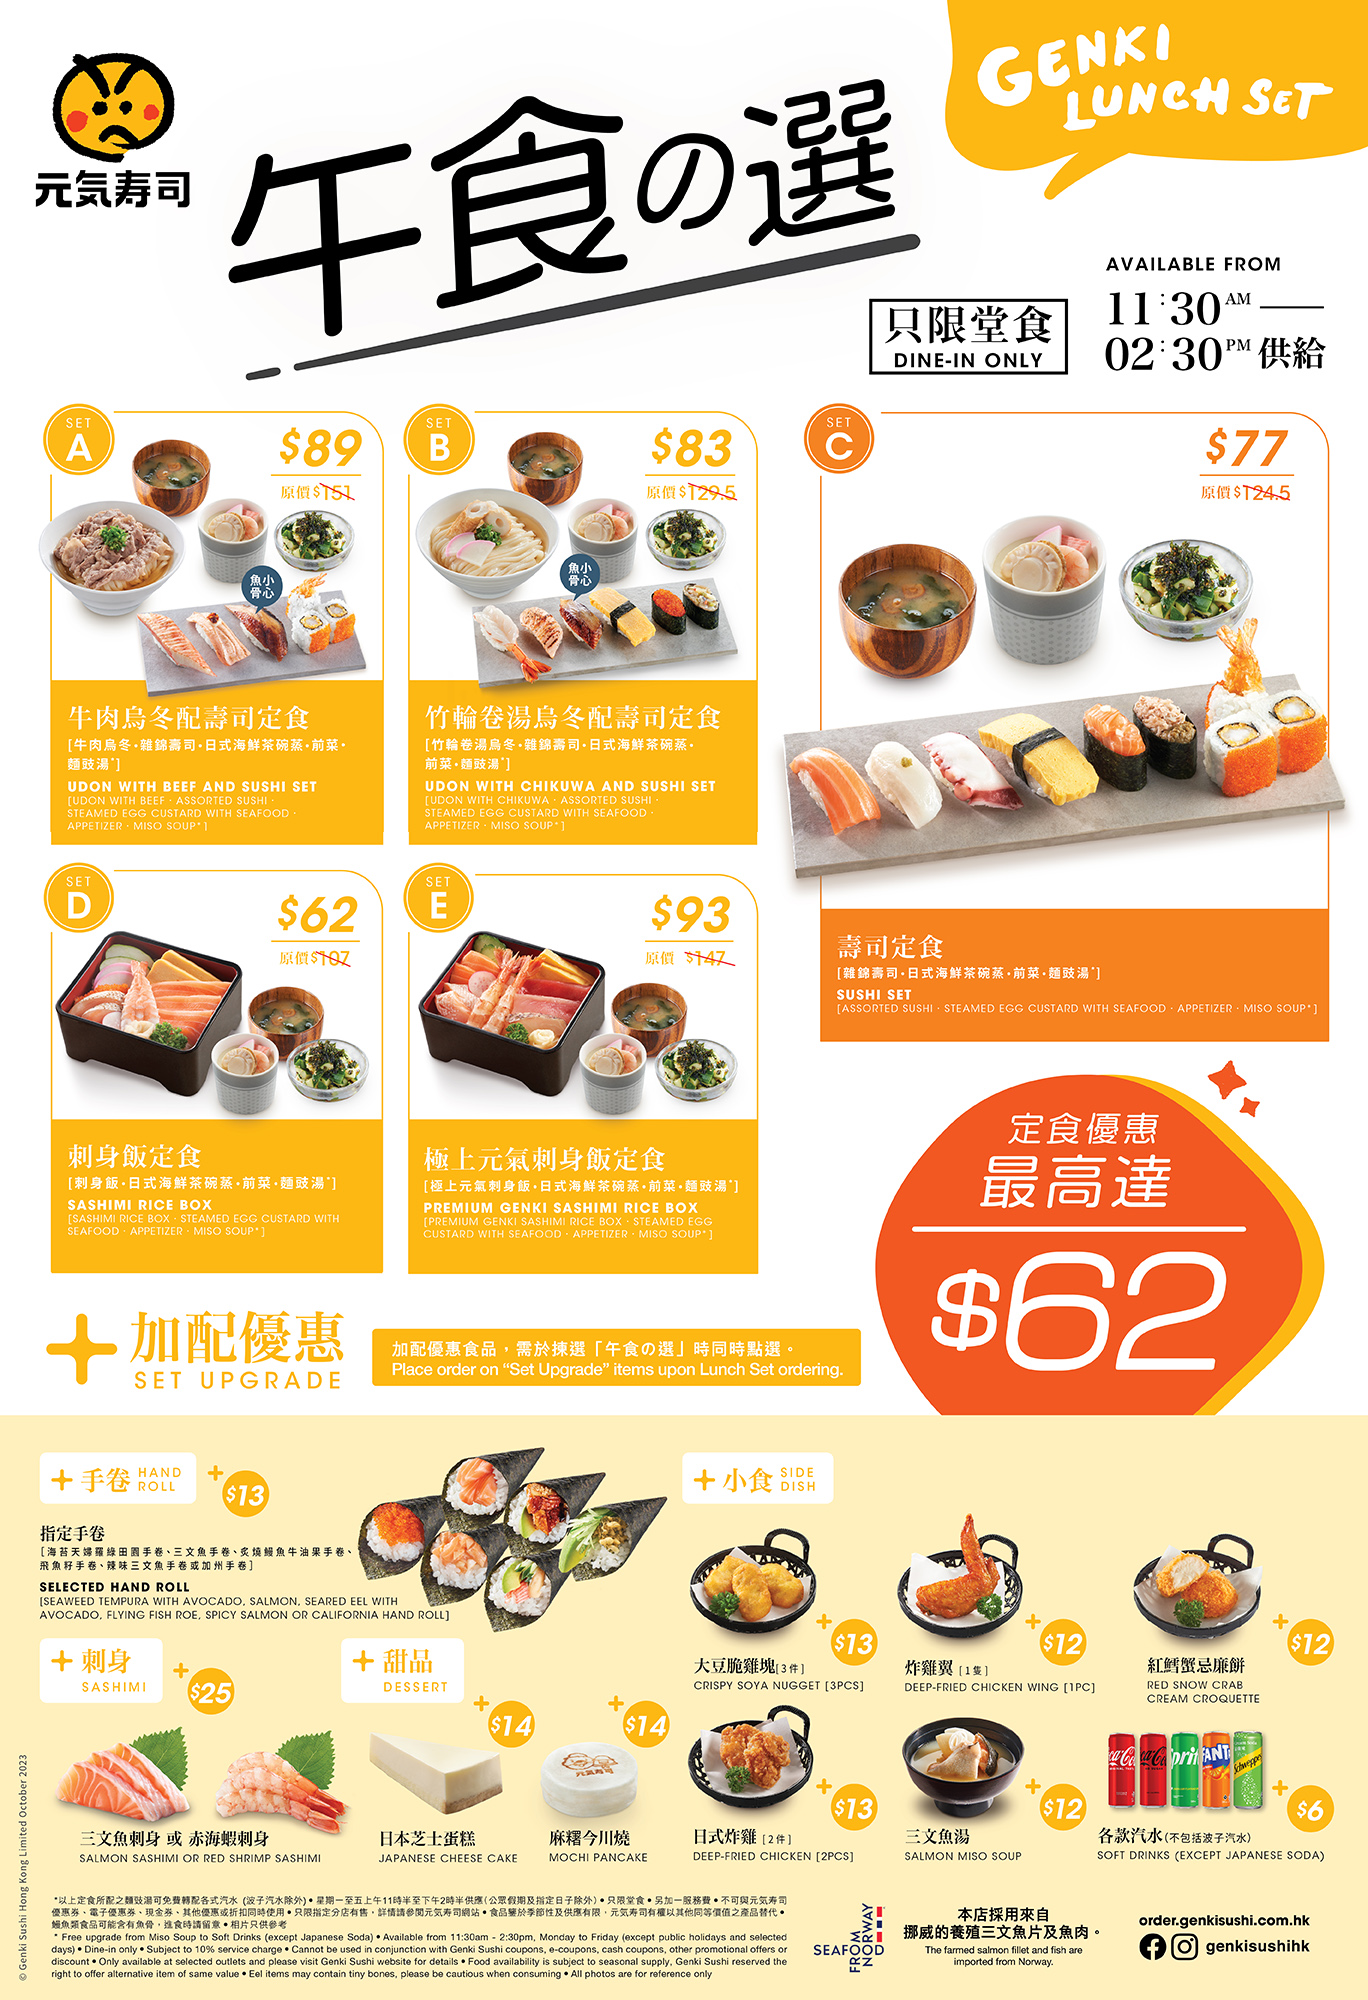 2310_JAP_GEKHD_Genki_Lunch_Menu_online_ordering_final.jpg